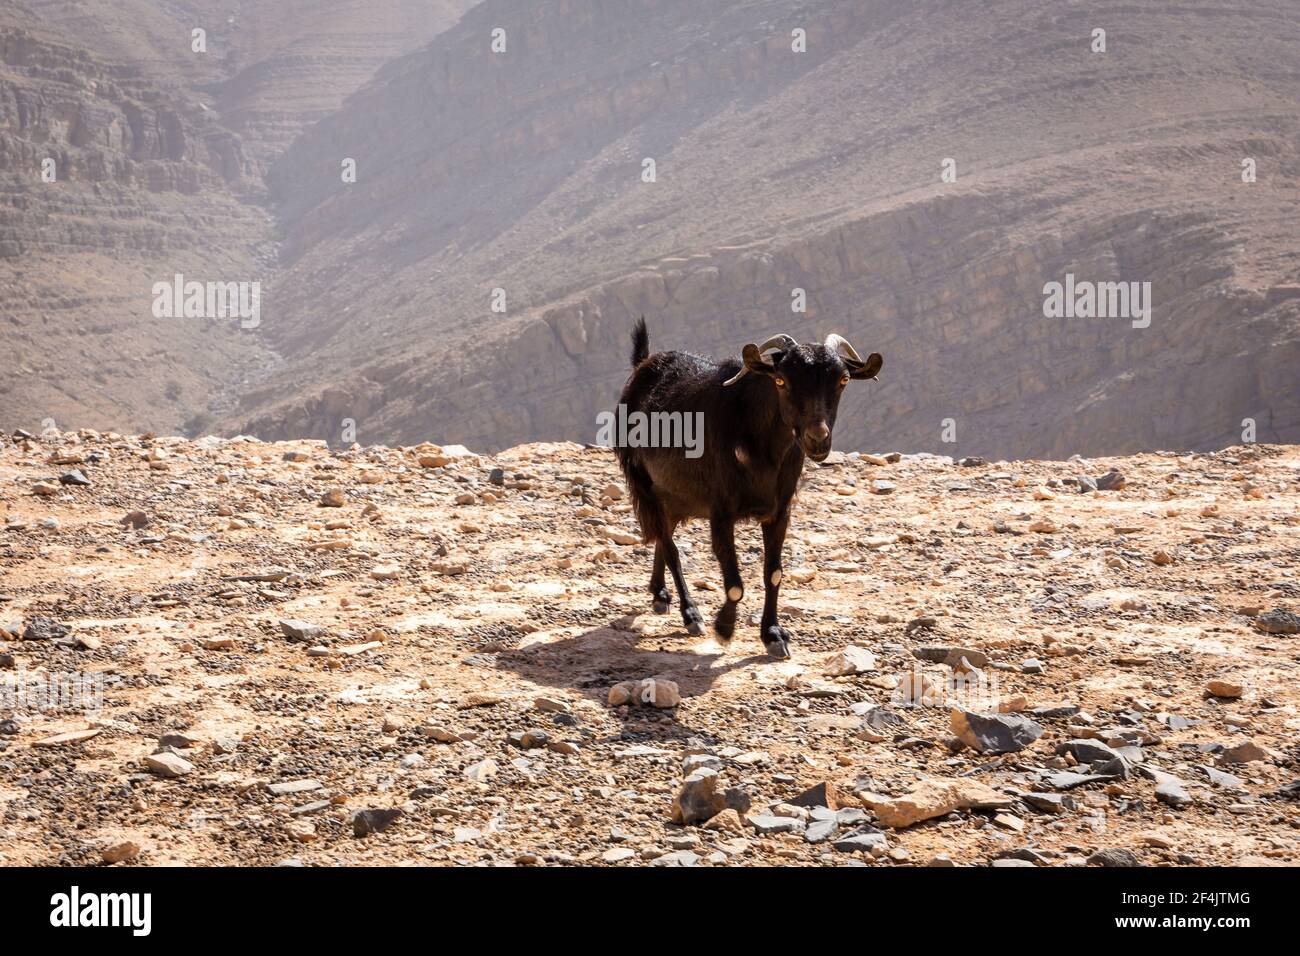 Chèvre noir (buck) avec des cornes et des yeux jaunes, se réveillant sur un sol pierreux avec des montagnes rocheuses stériles en arrière-plan dans la chaîne de montagnes Jebel JAIS. Banque D'Images